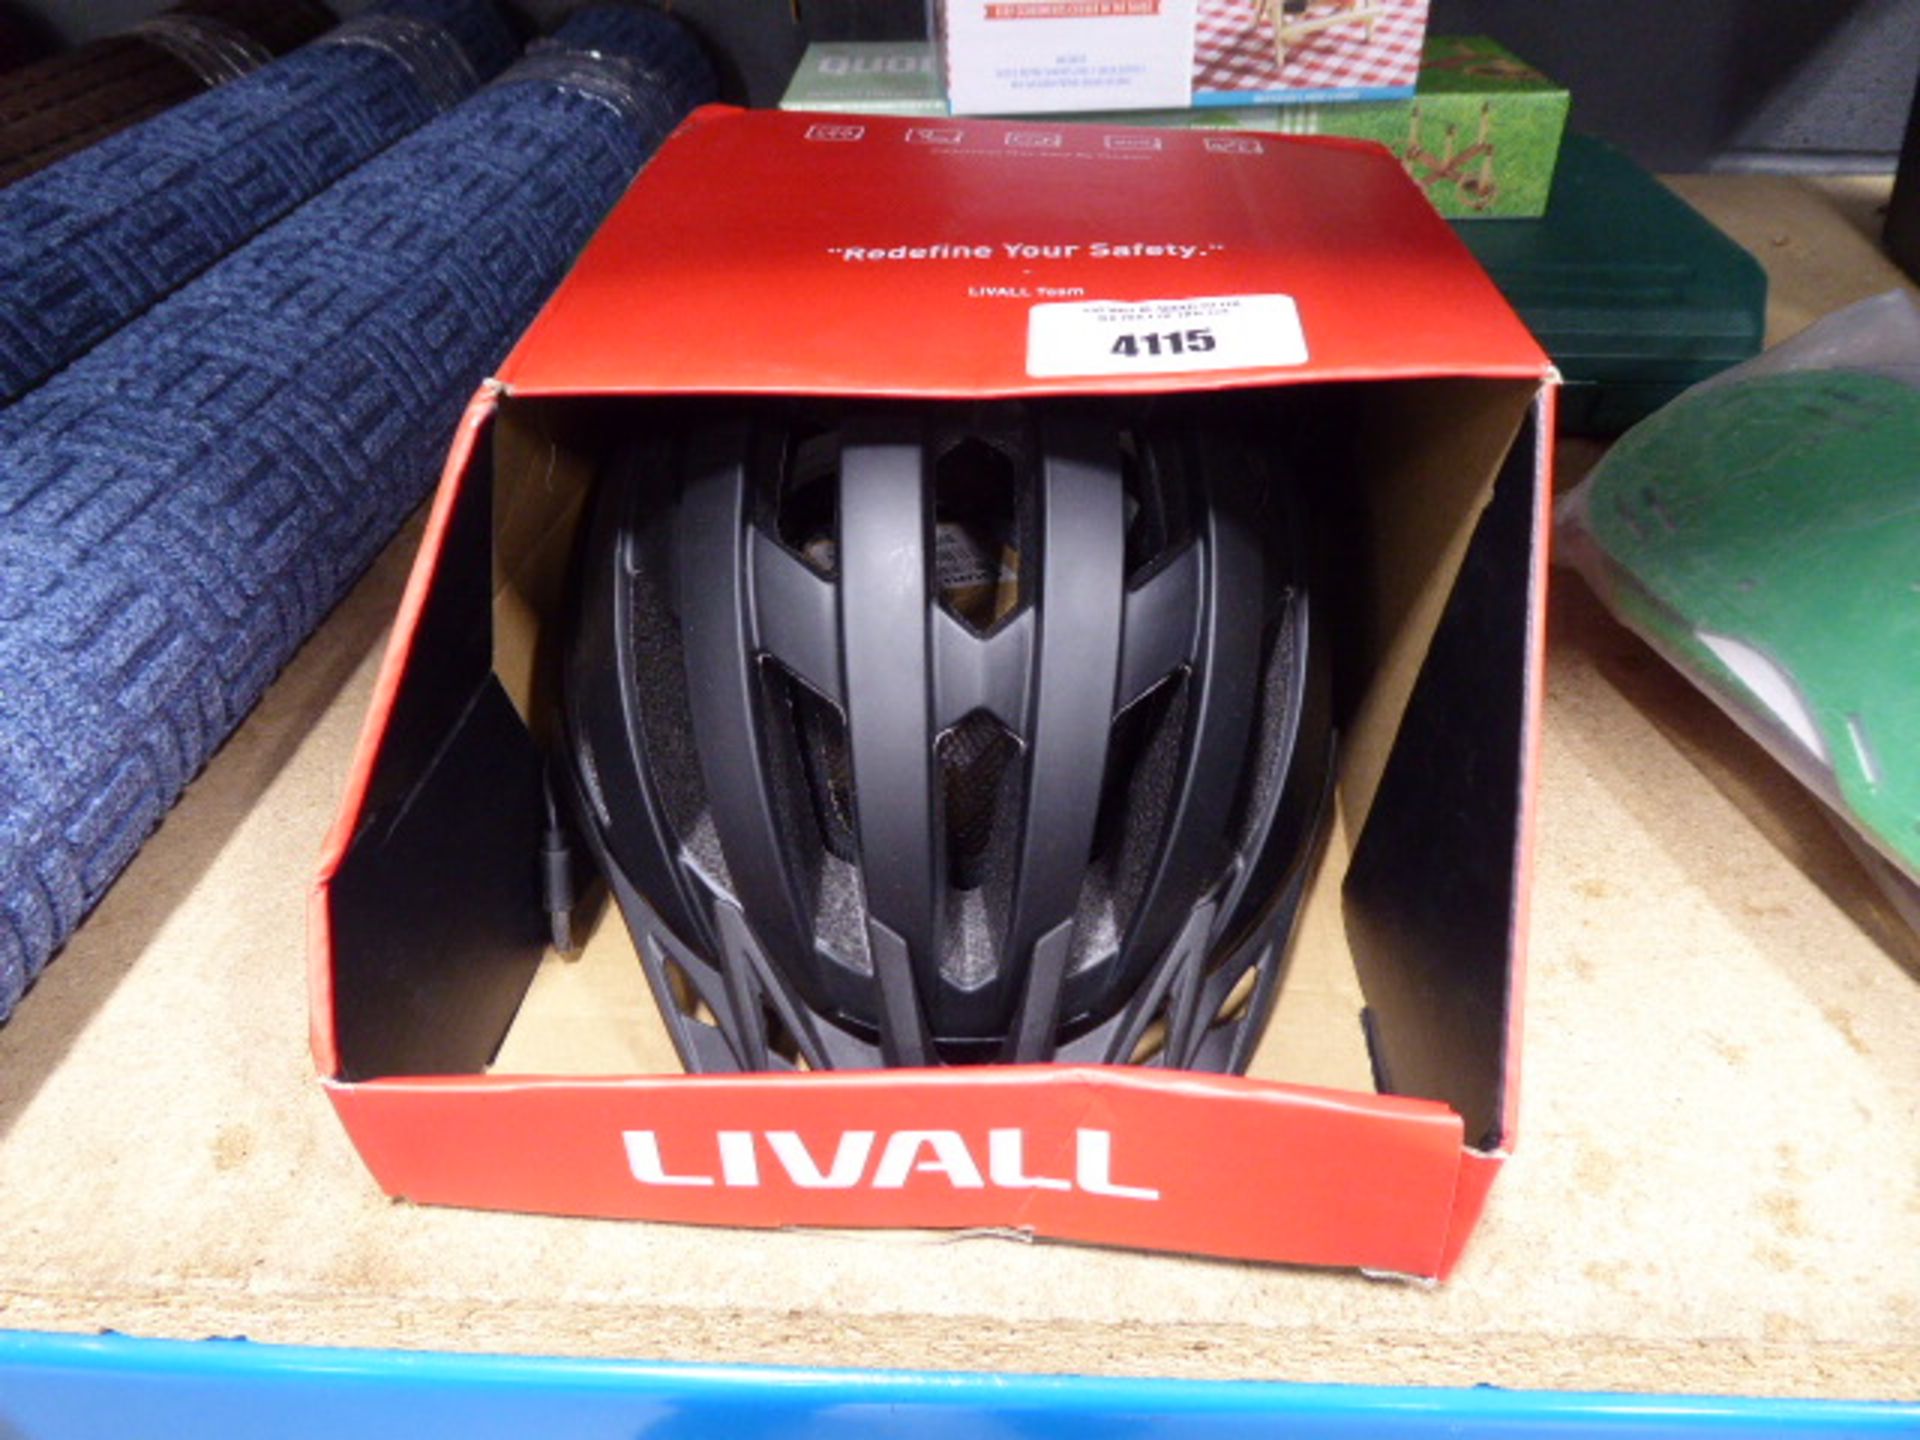 Livall smart bike helmet